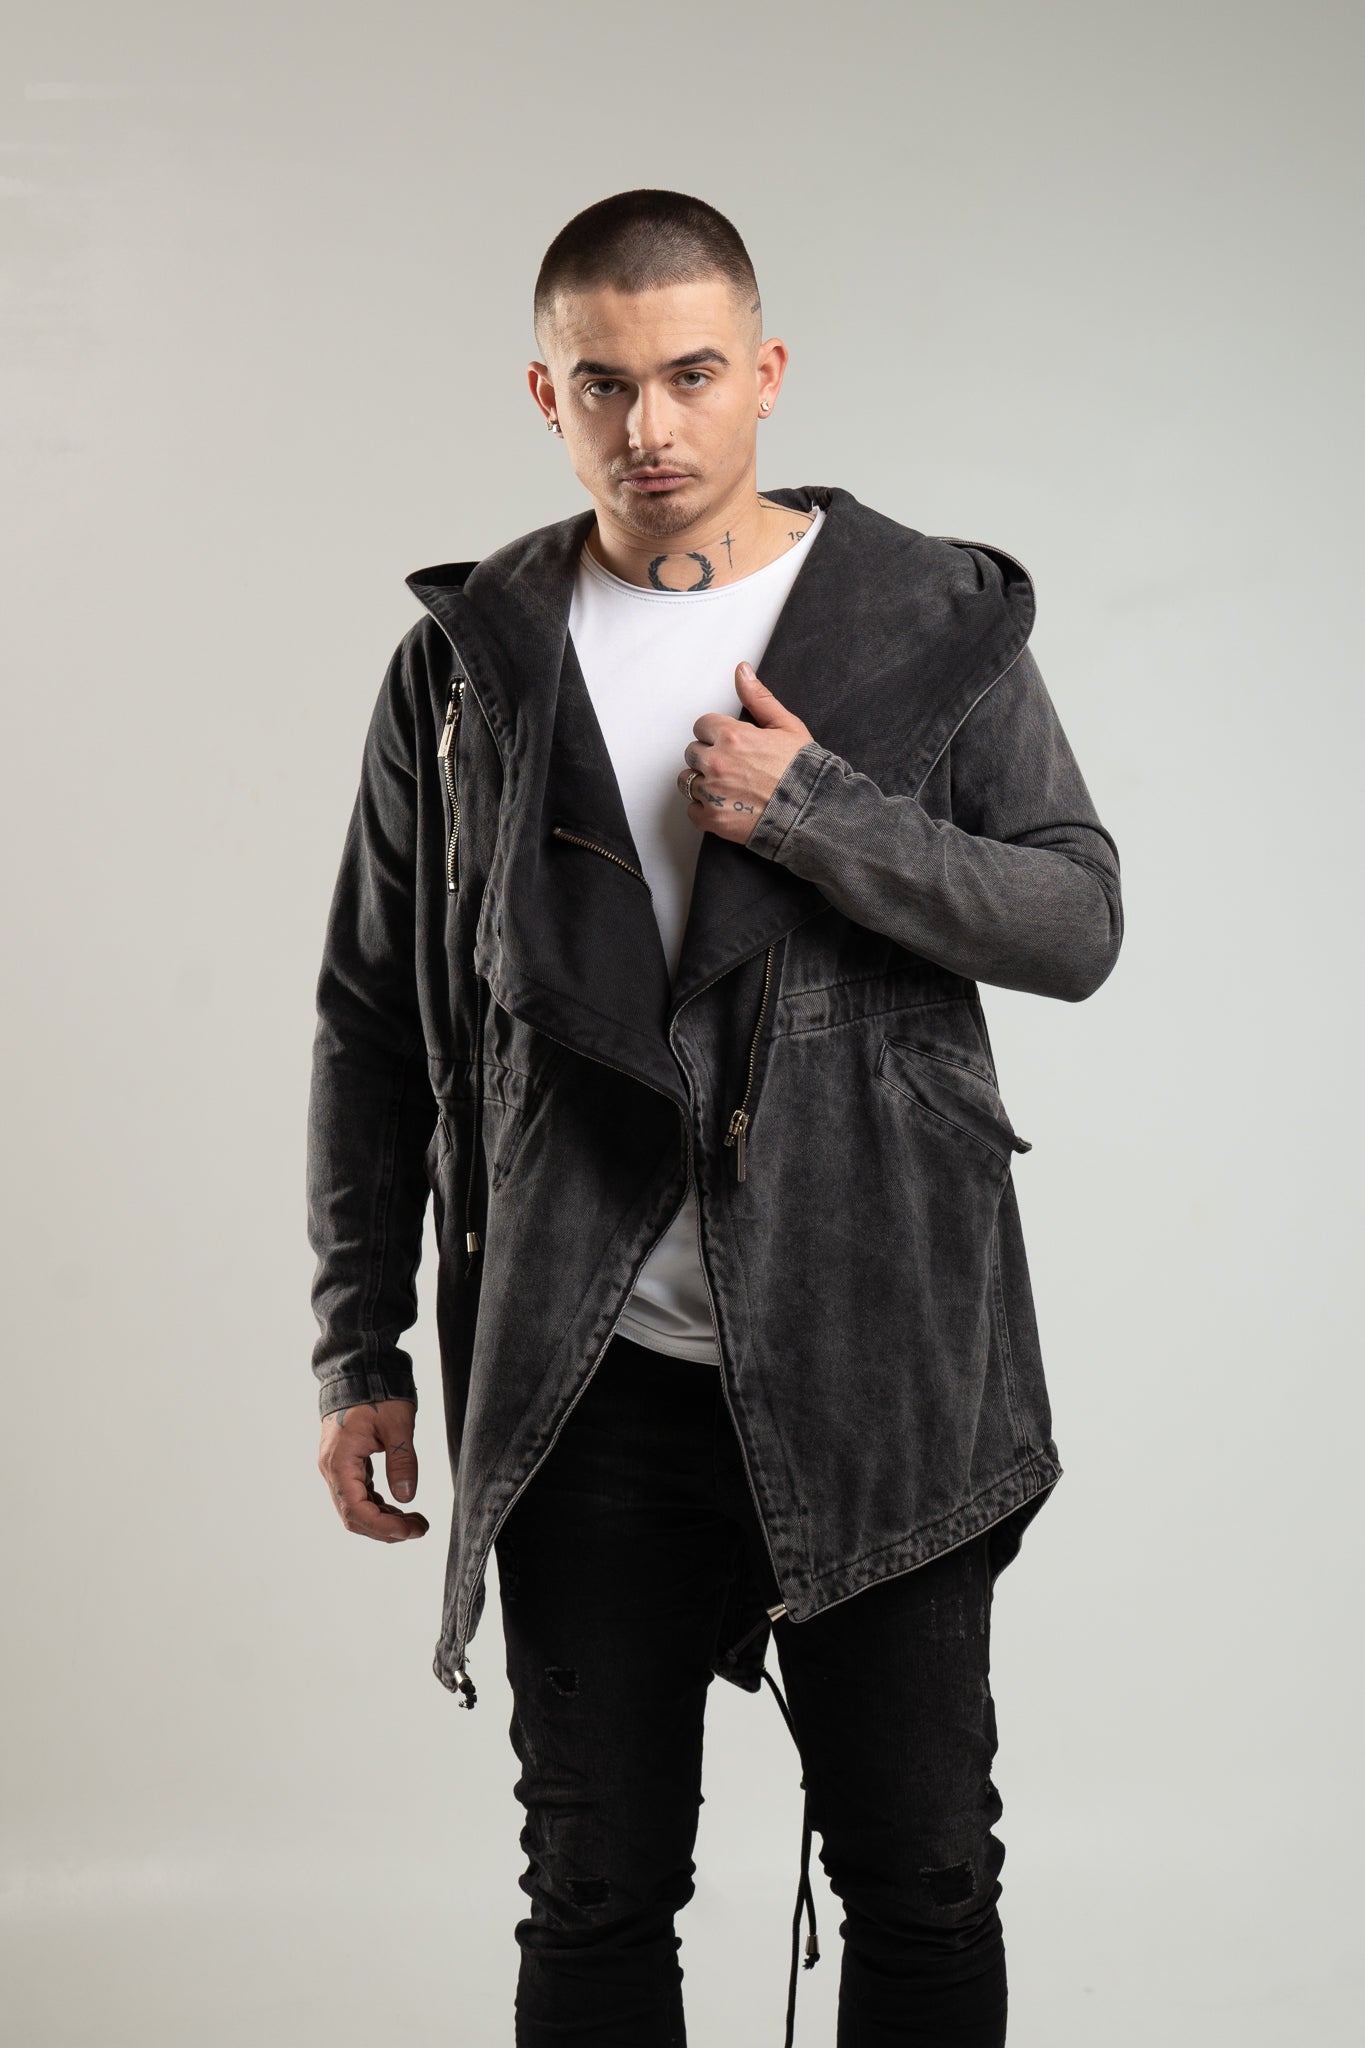 Czarna jeansowa kurtka męska z kapturem z ozdobnymi elementami